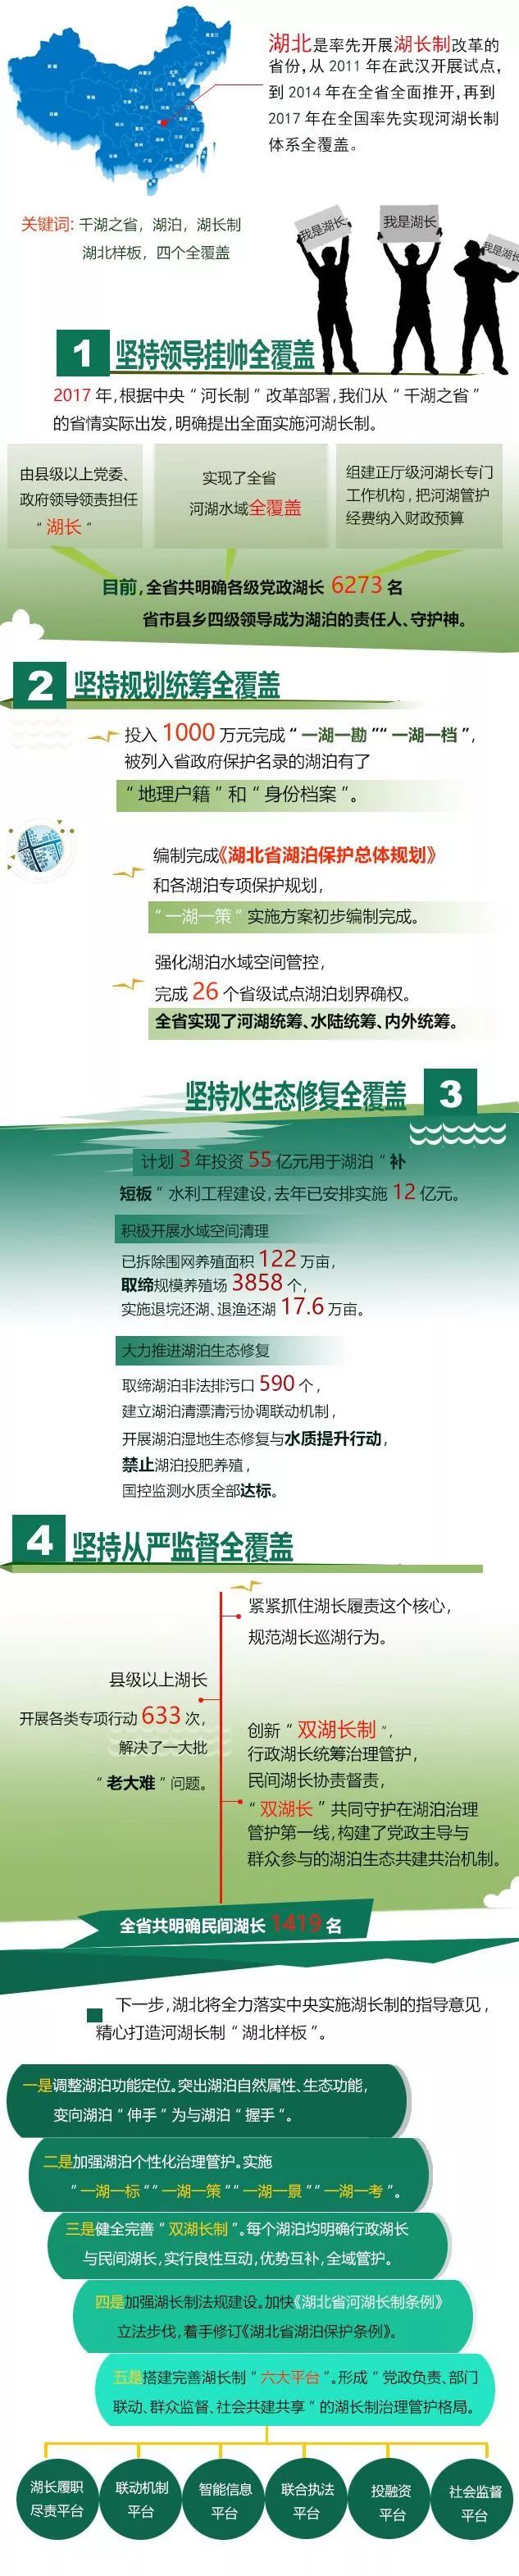 2018婚纱模板免费下载_www.6300.net2018-04-16中国工程机械信息网(2)